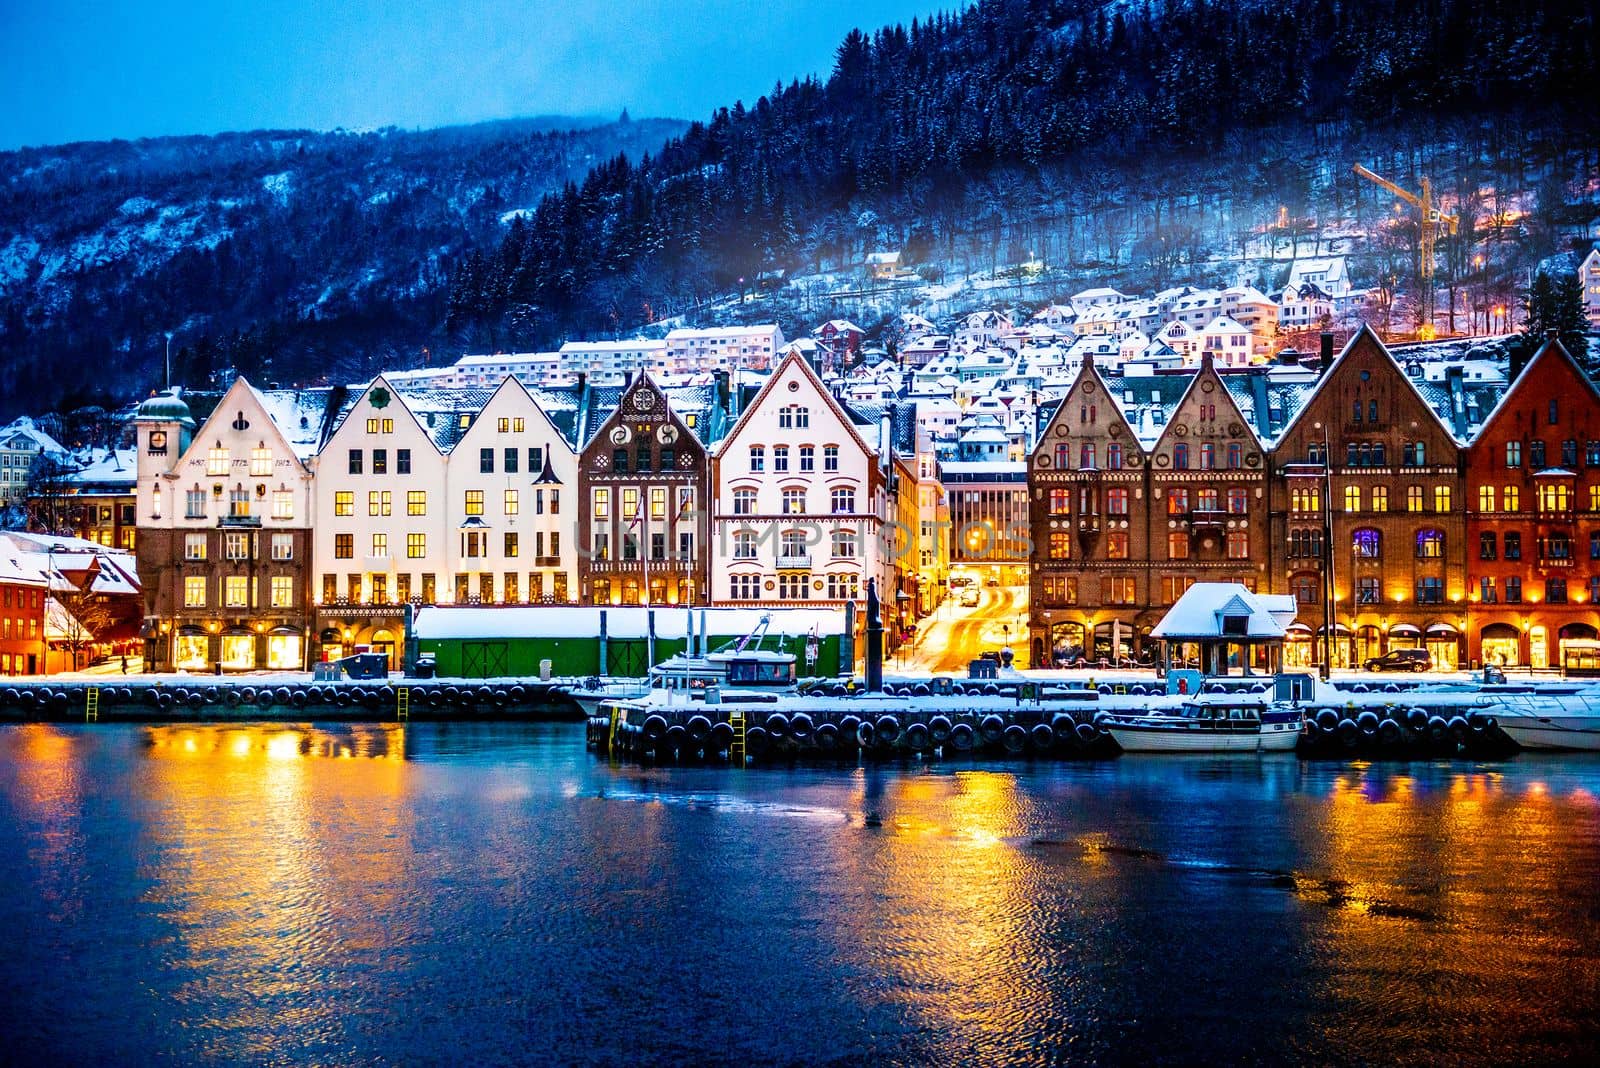 Bergen city in Norway by tan4ikk1